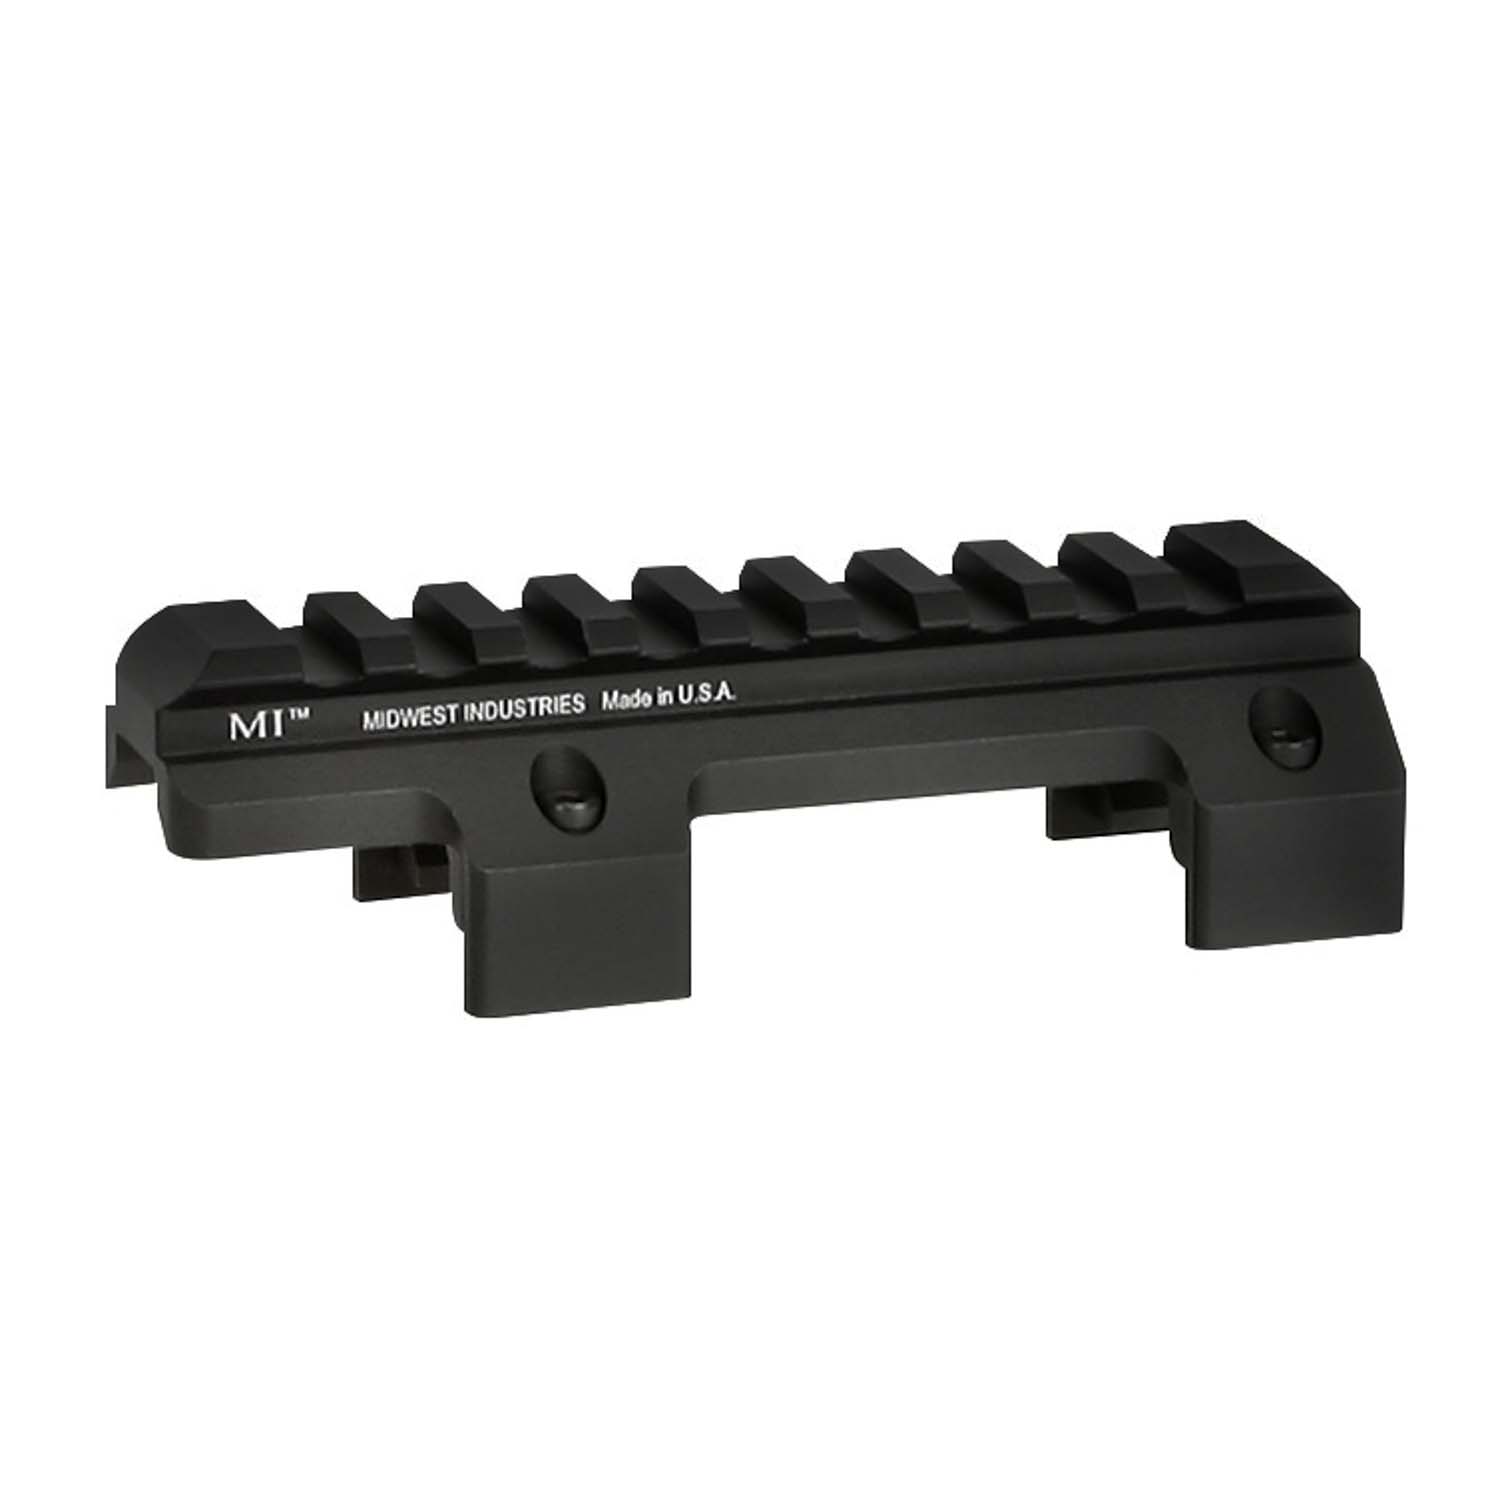 Description: Midwest Industries HK MP5 Picatinny Top Rail. 